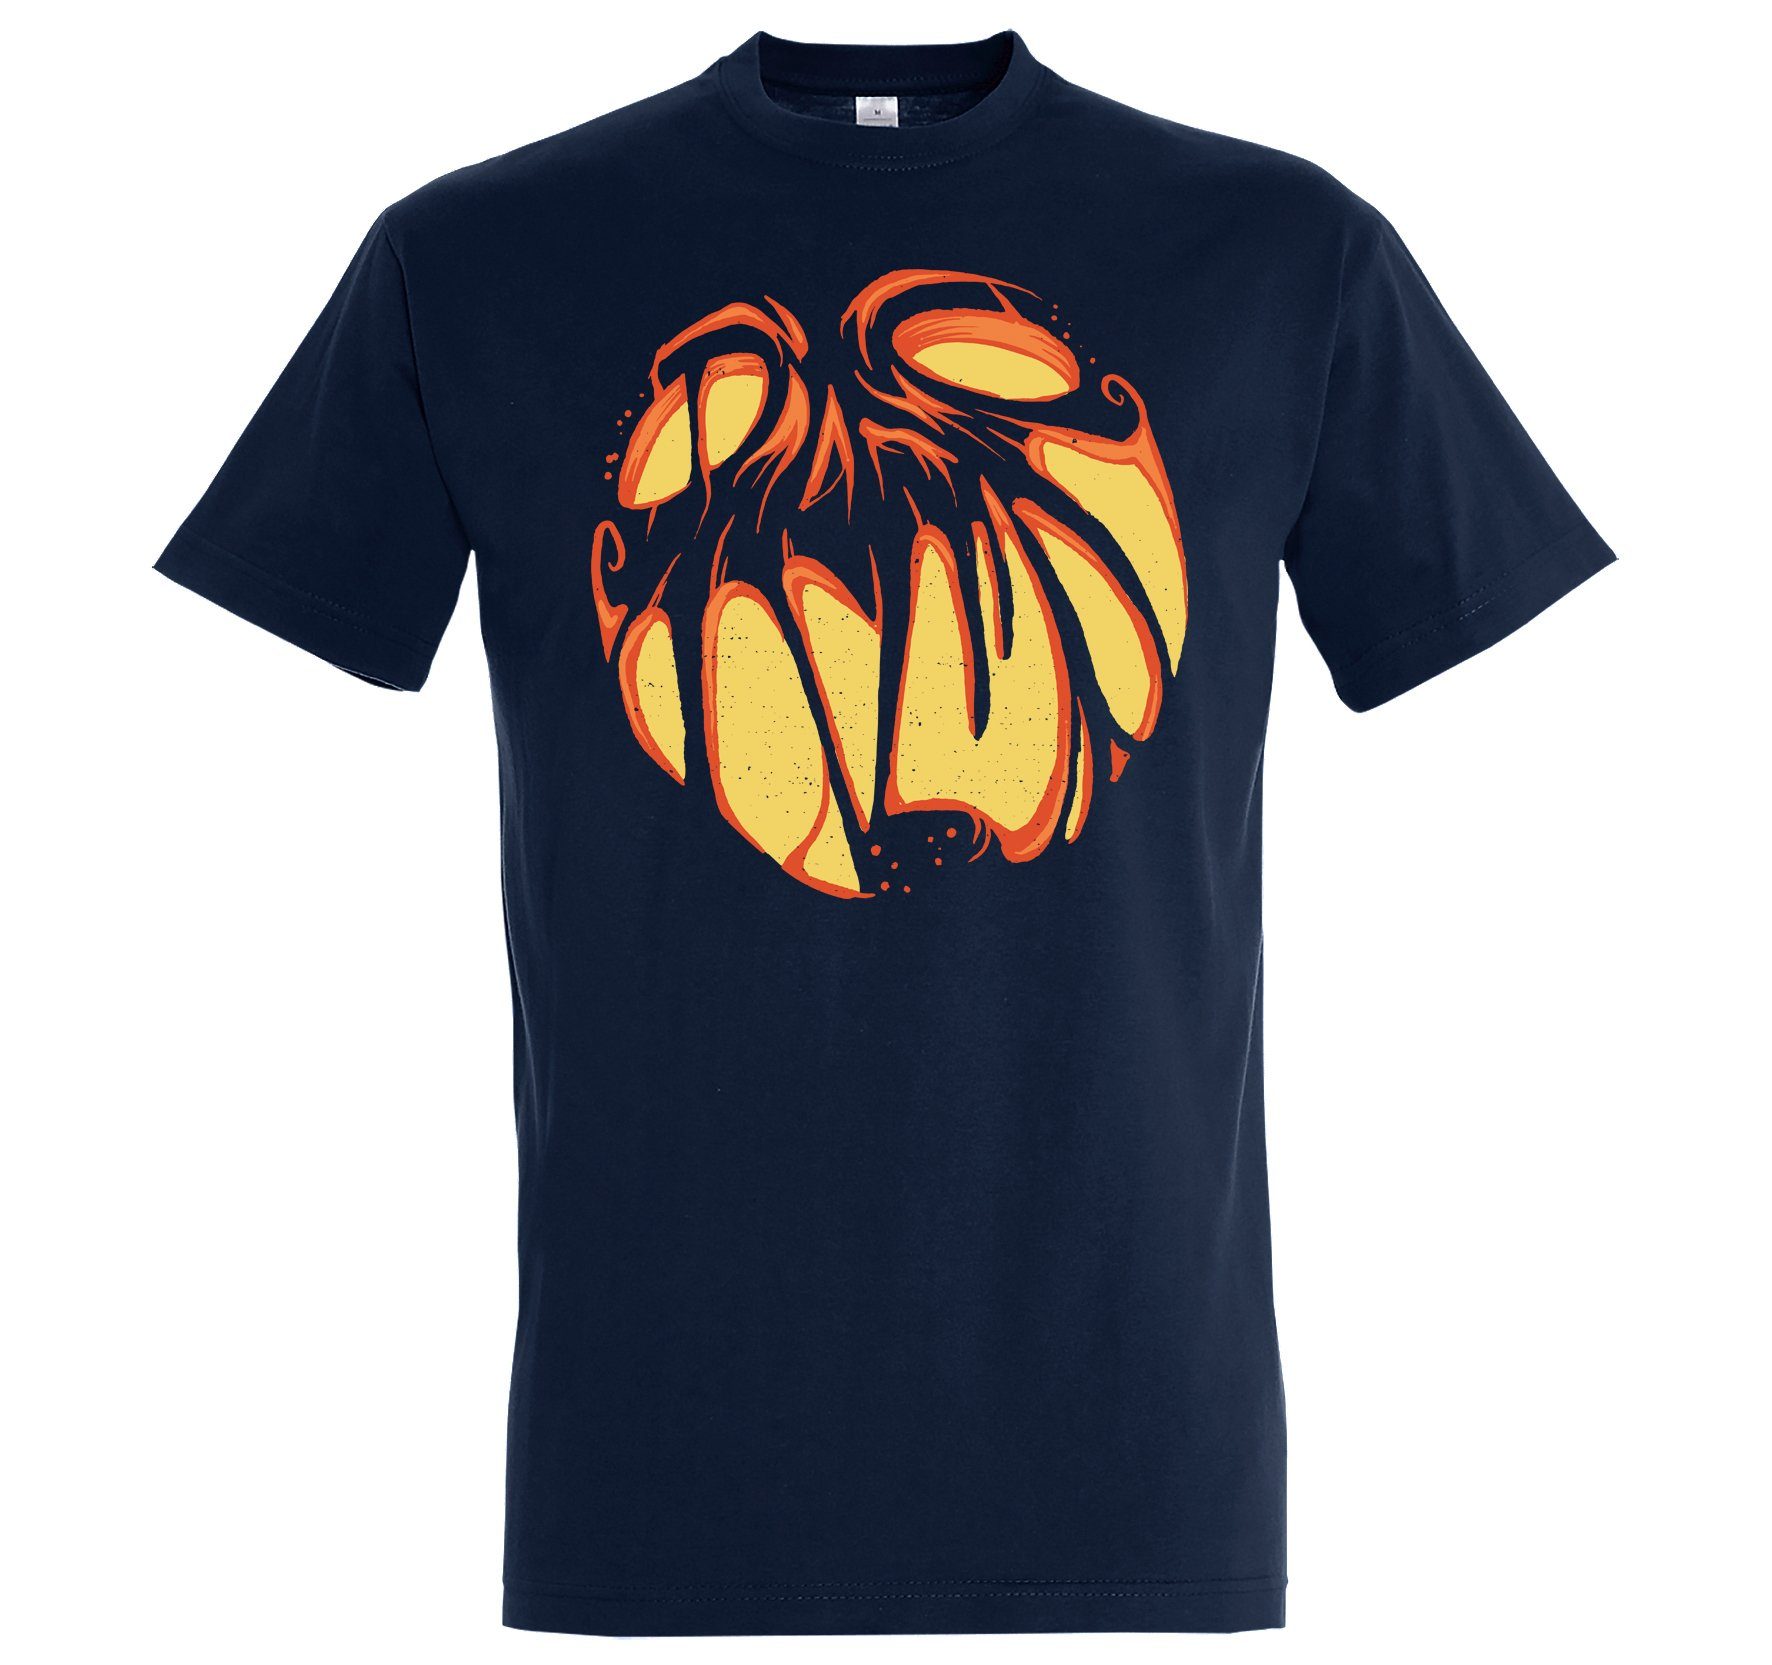 T-Shirt Aufdruck mit Kürbis Halloween Fun-Look Herren lustigem Designz Print Face Youth Horror Print-Shirt Navyblau